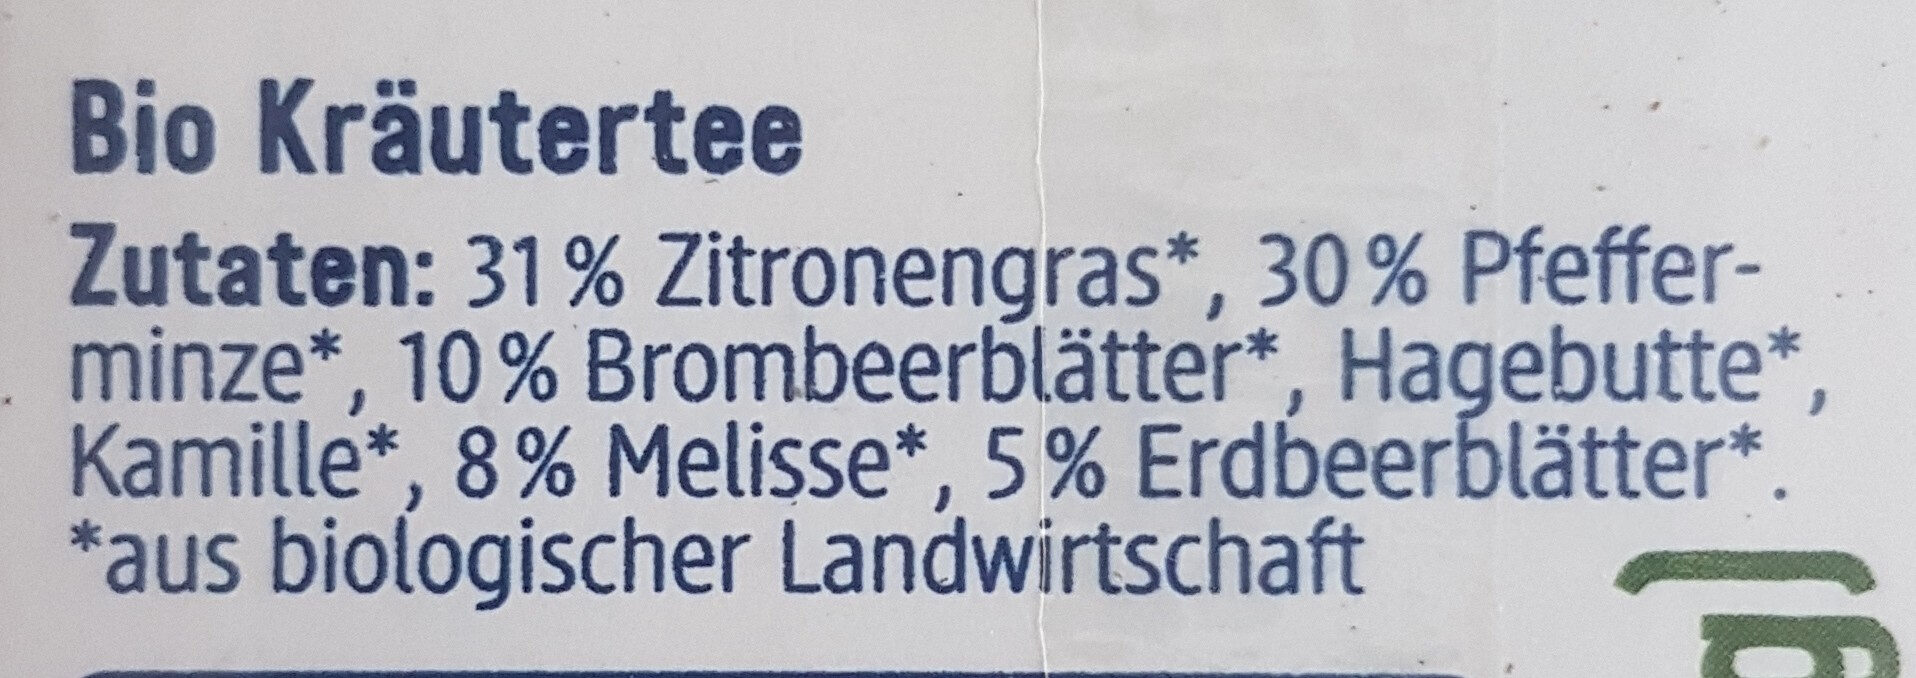 Kräuter Tee Zitronengras & Melisse - Zutaten